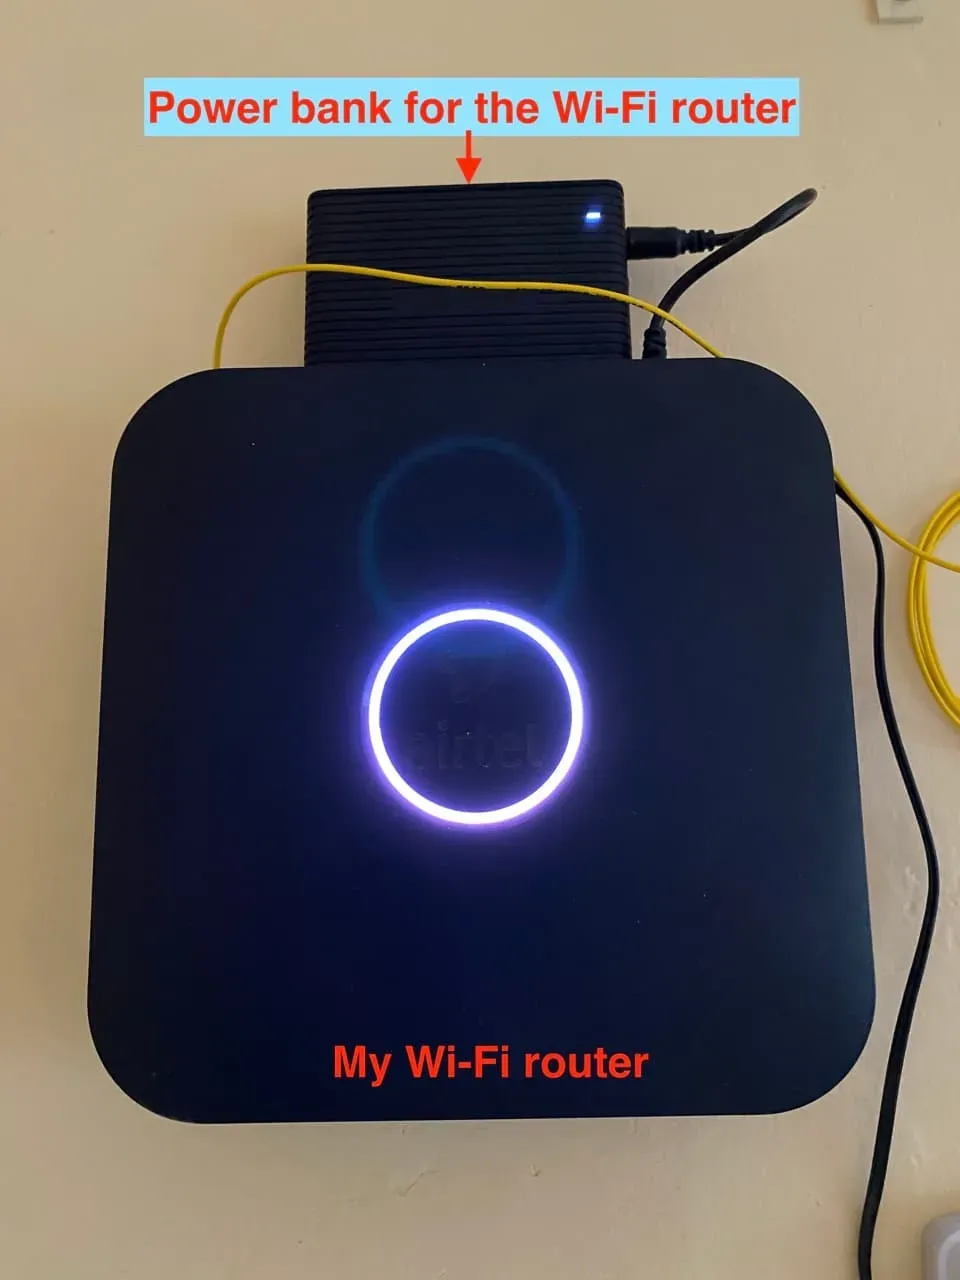 Enrutador Wi-Fi con banco de energía conectado a él